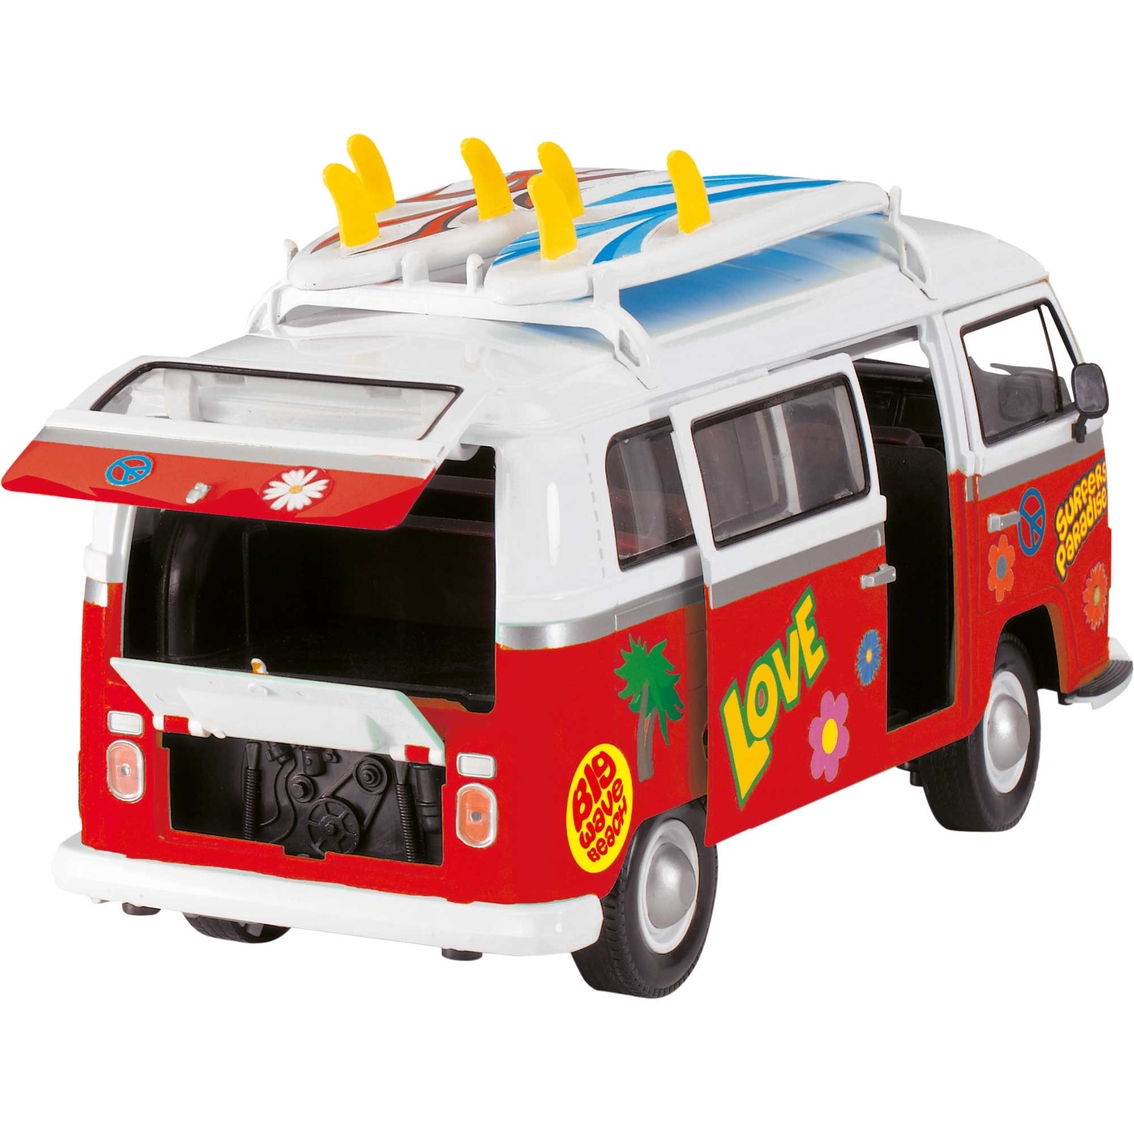 Dickie Toys Surfer Van - Image 3 of 6